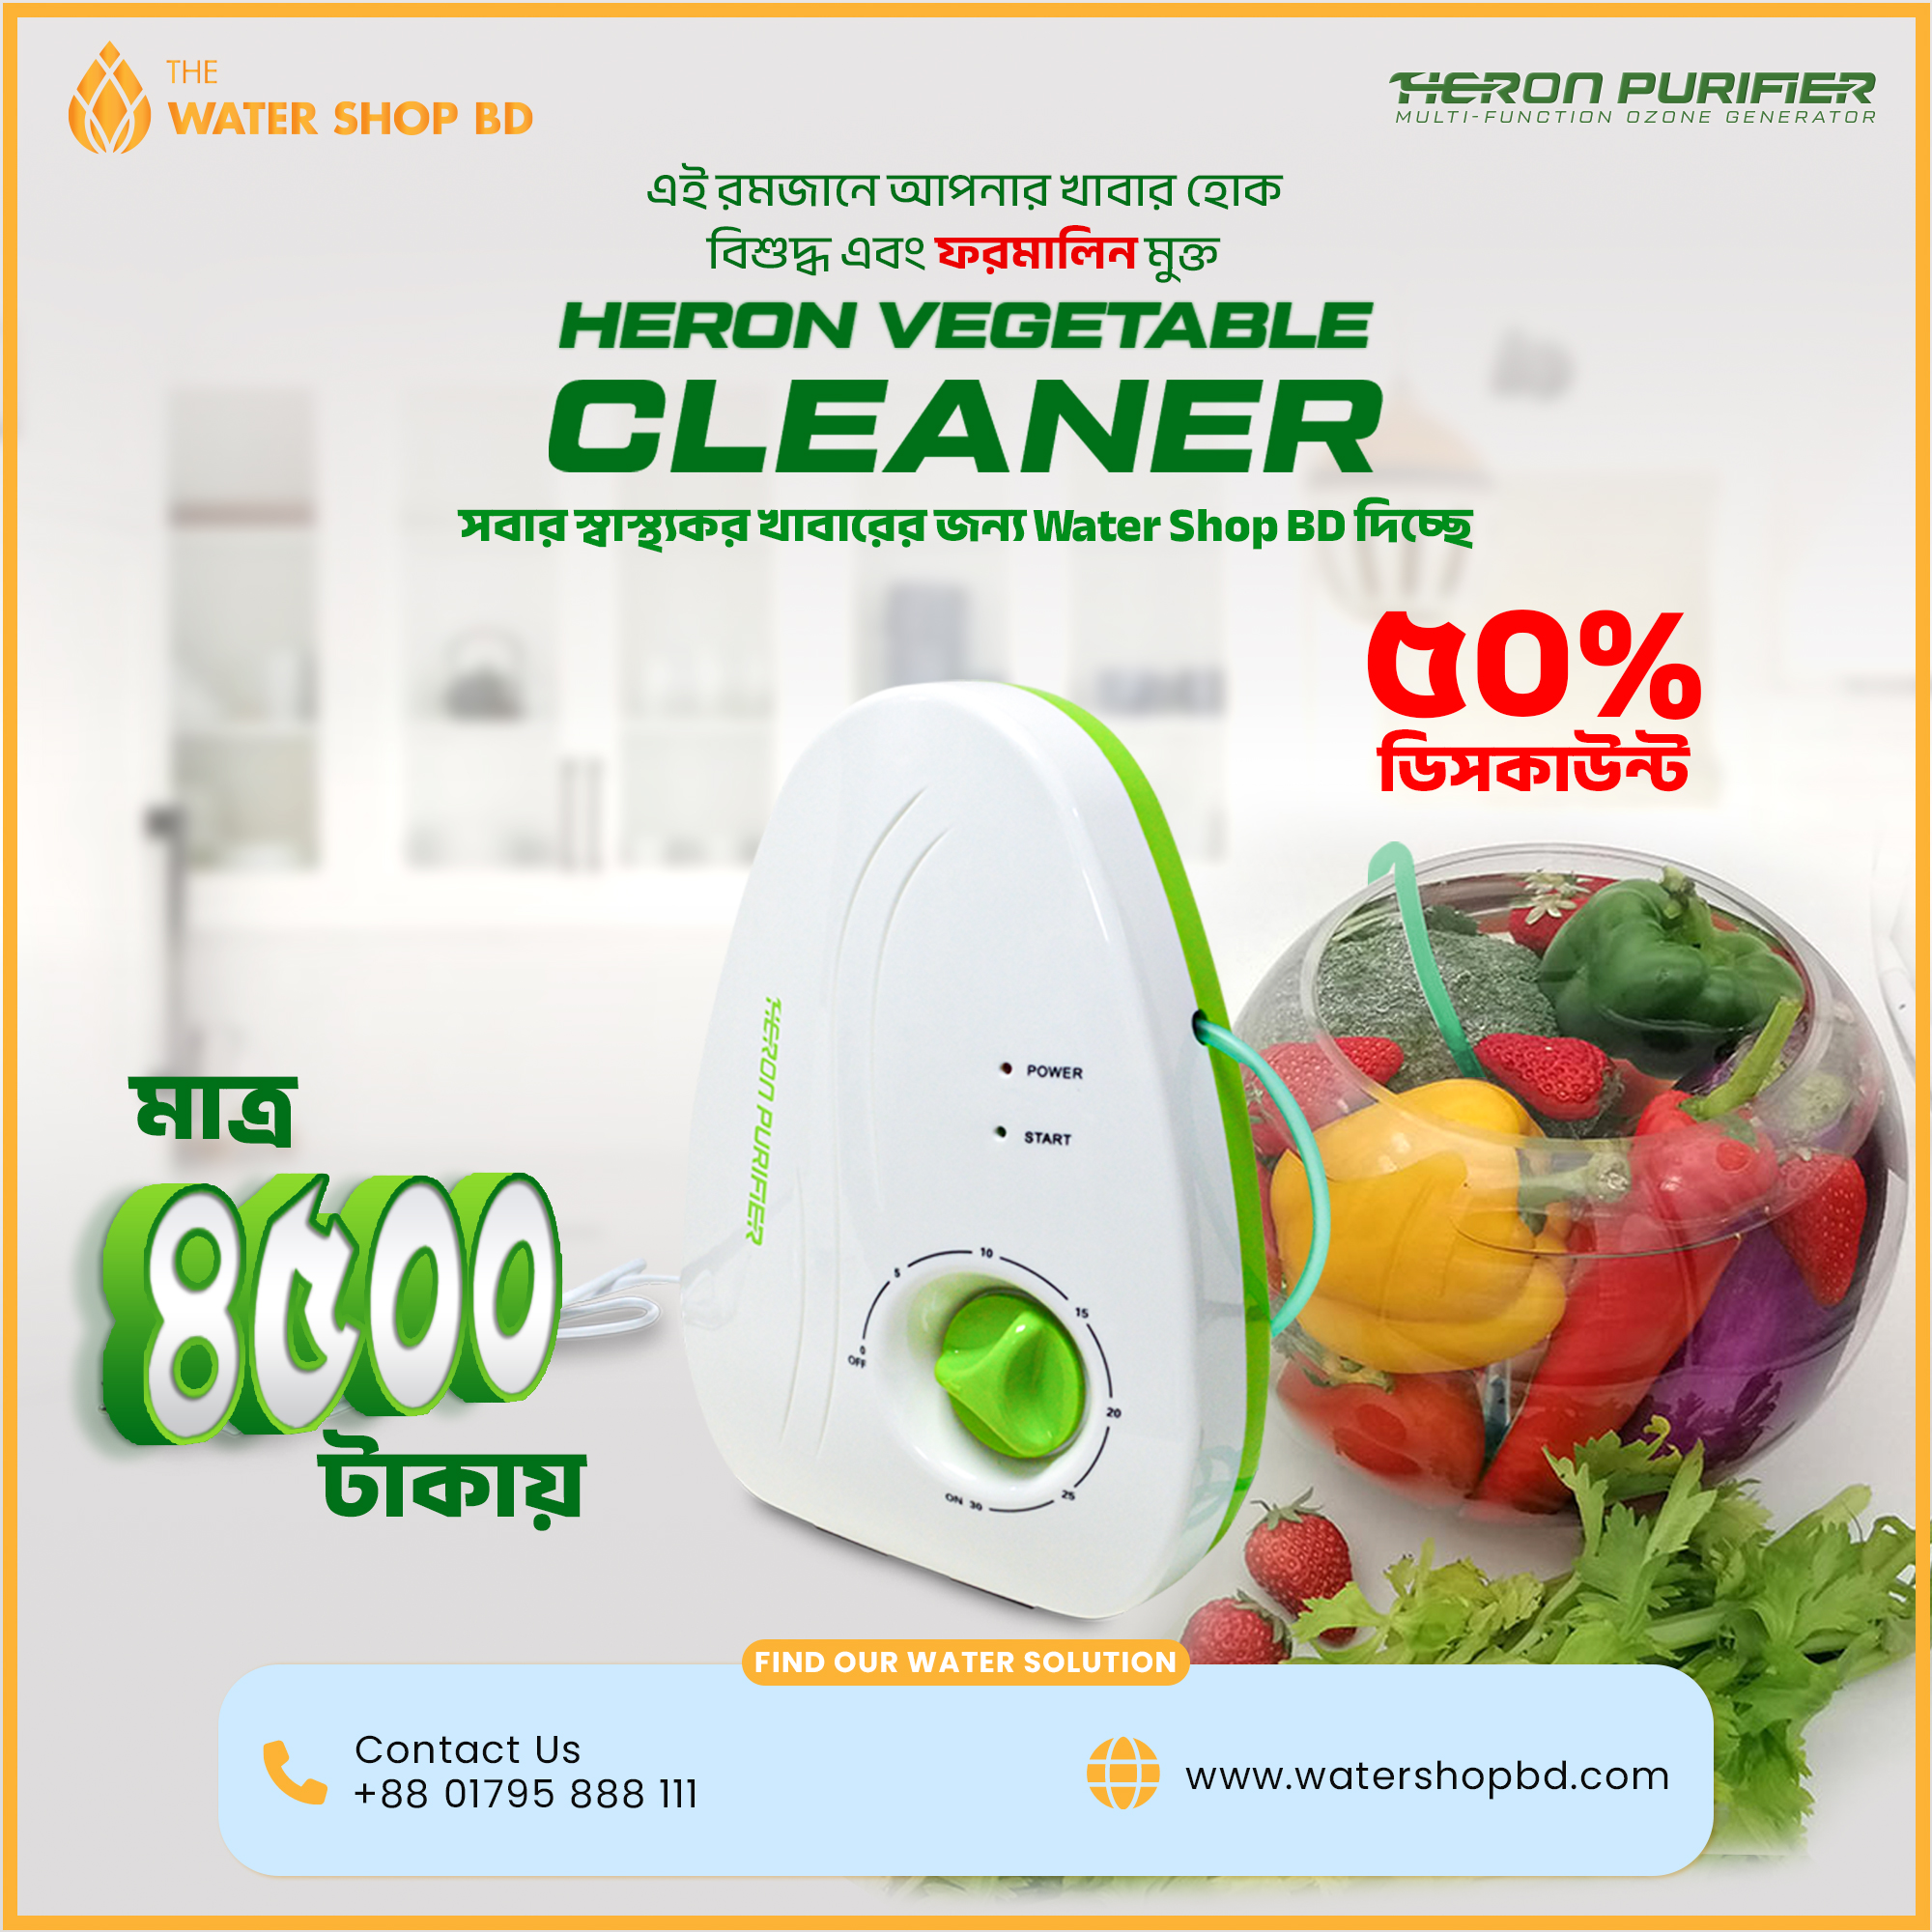 Vegetable Cleaner Offer-Heron-Water Shop BD.jpg